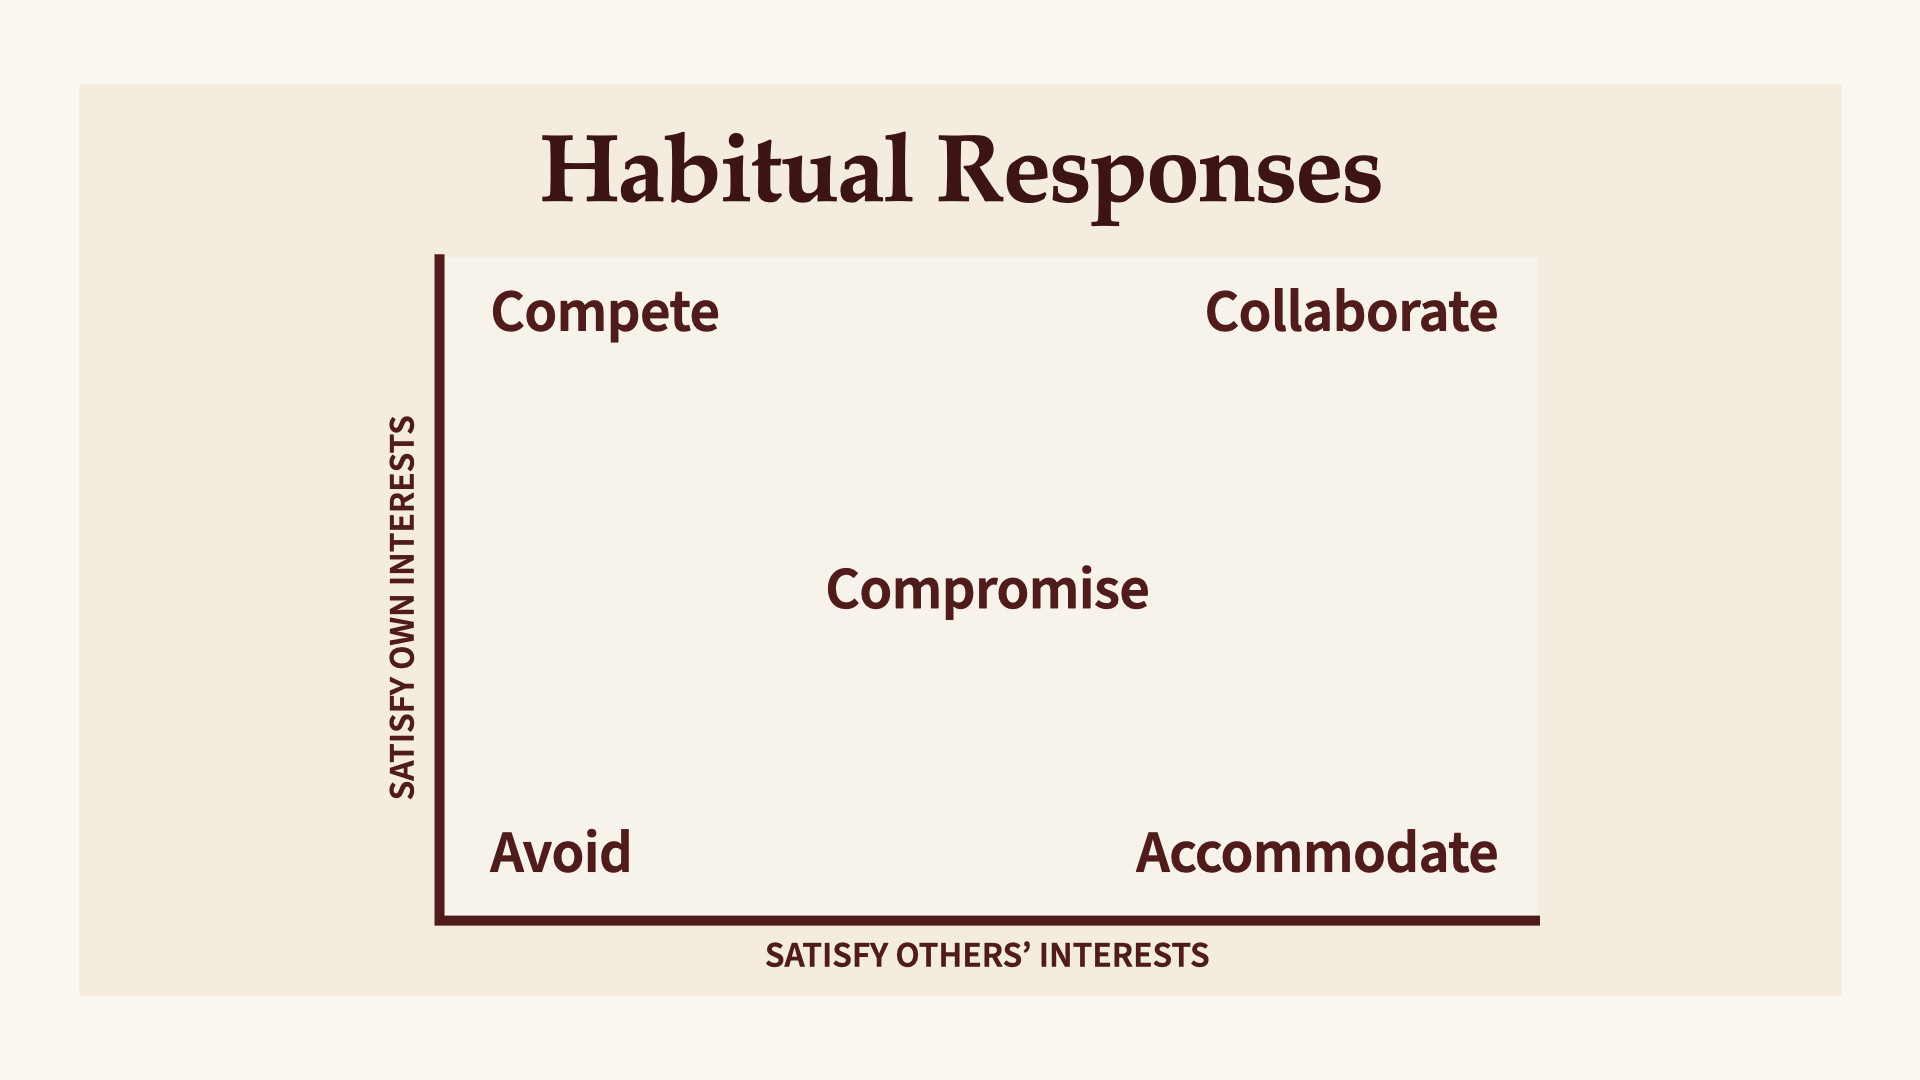 Habitual Responses graph